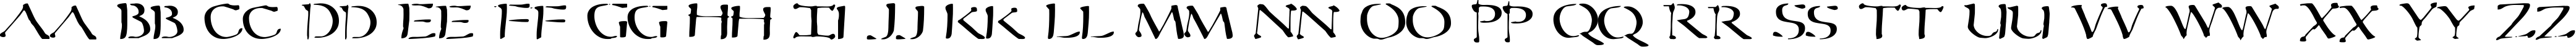 Пример написания английского алфавита шрифтом Sever